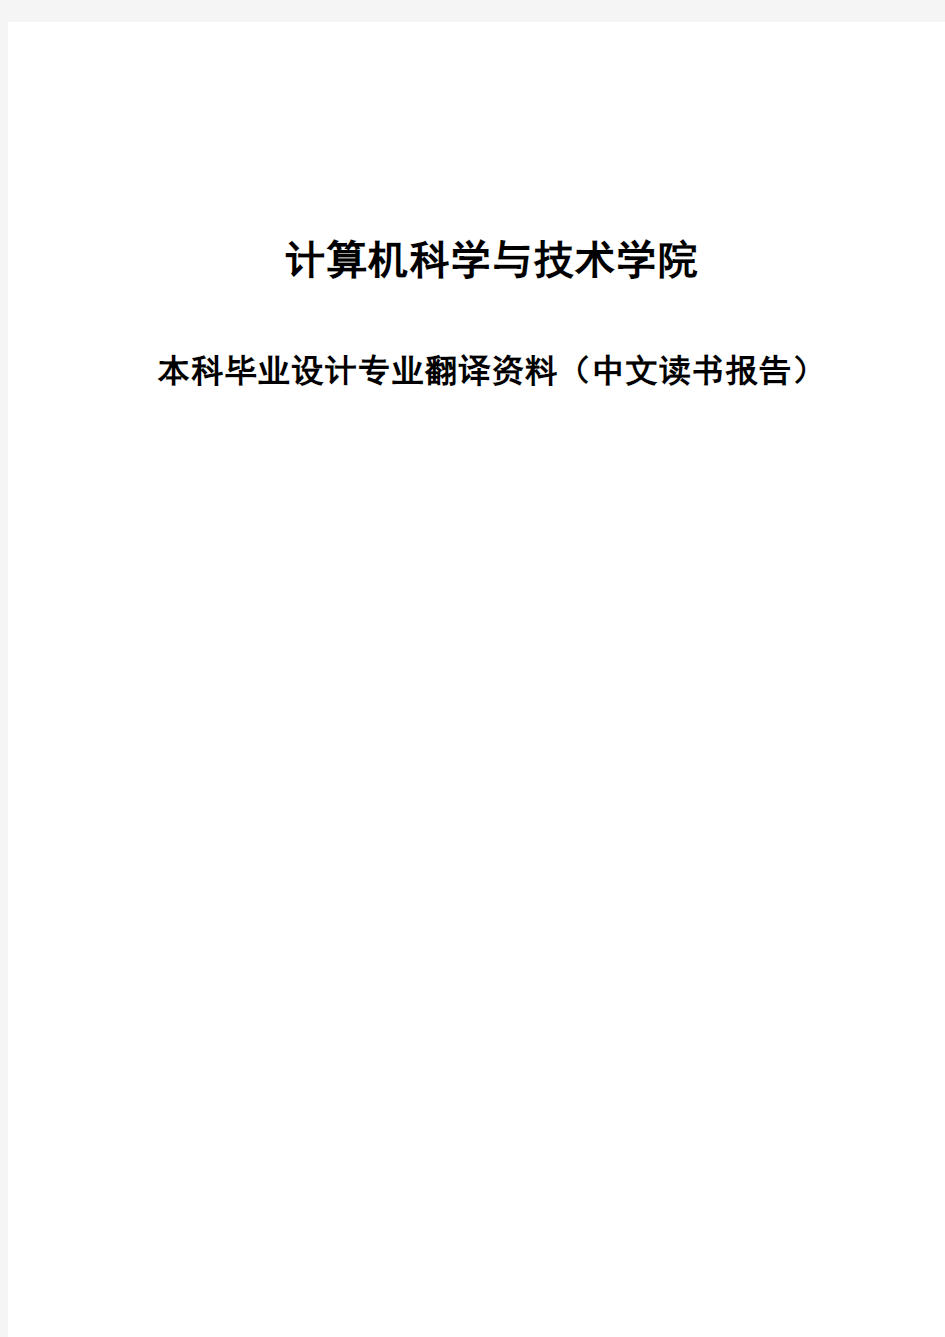 本科毕业设计专业翻译资料(中文读书报告)封面